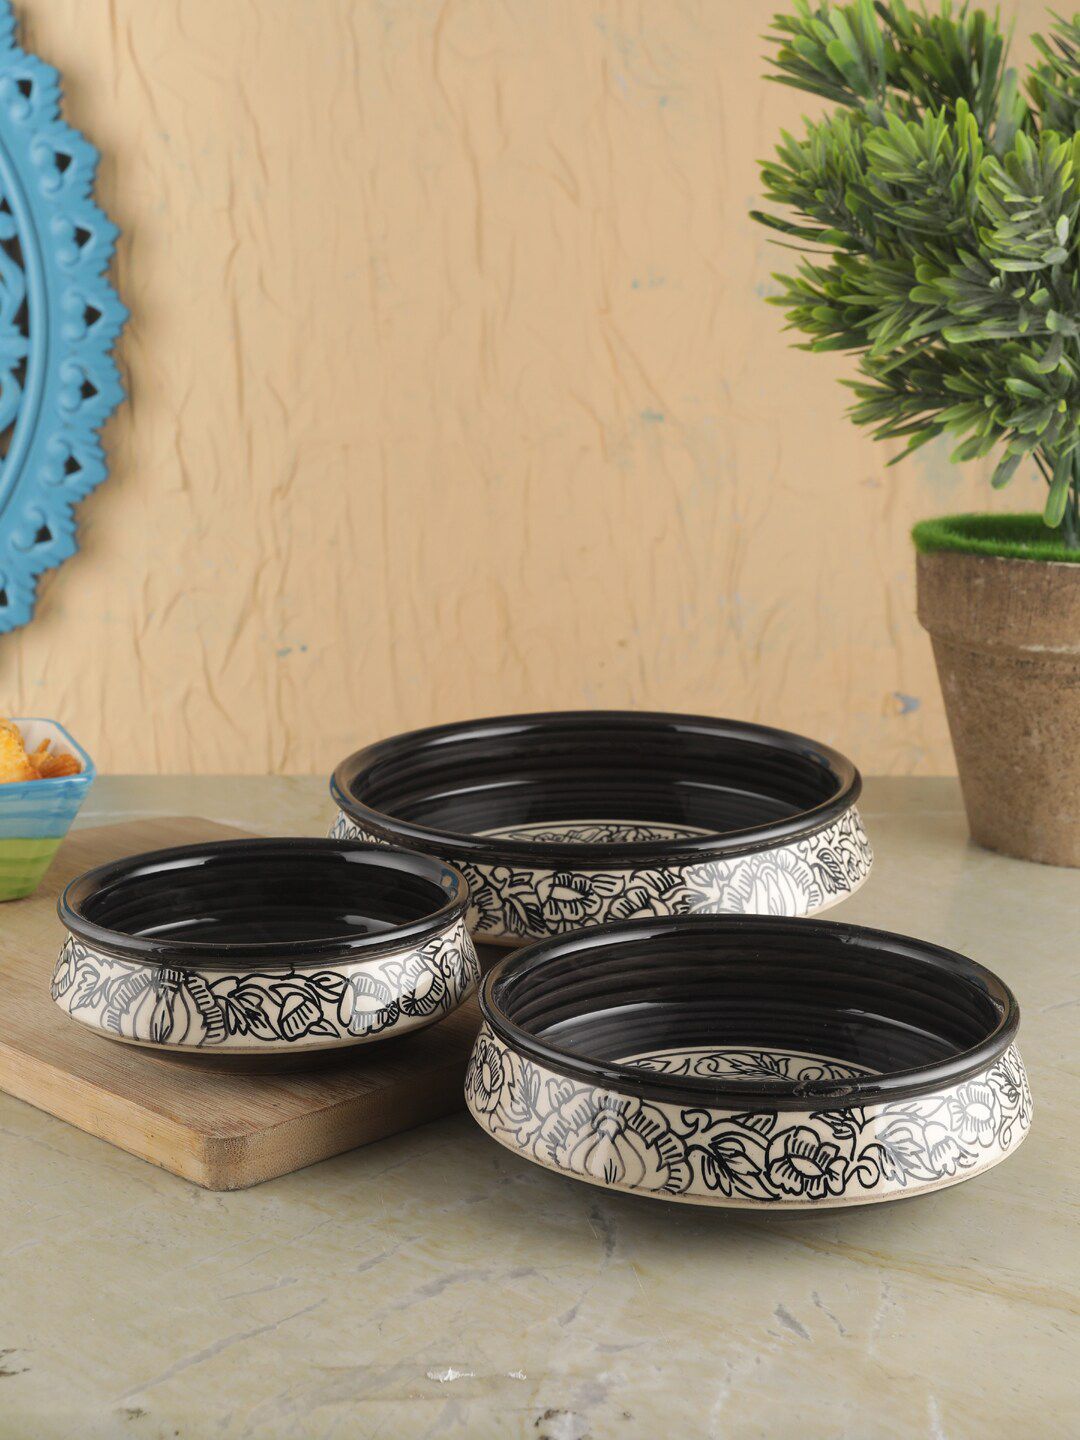 VarEesha set of 3 Kalamkari Black & White Ceramic Flat Serving Bowls Price in India